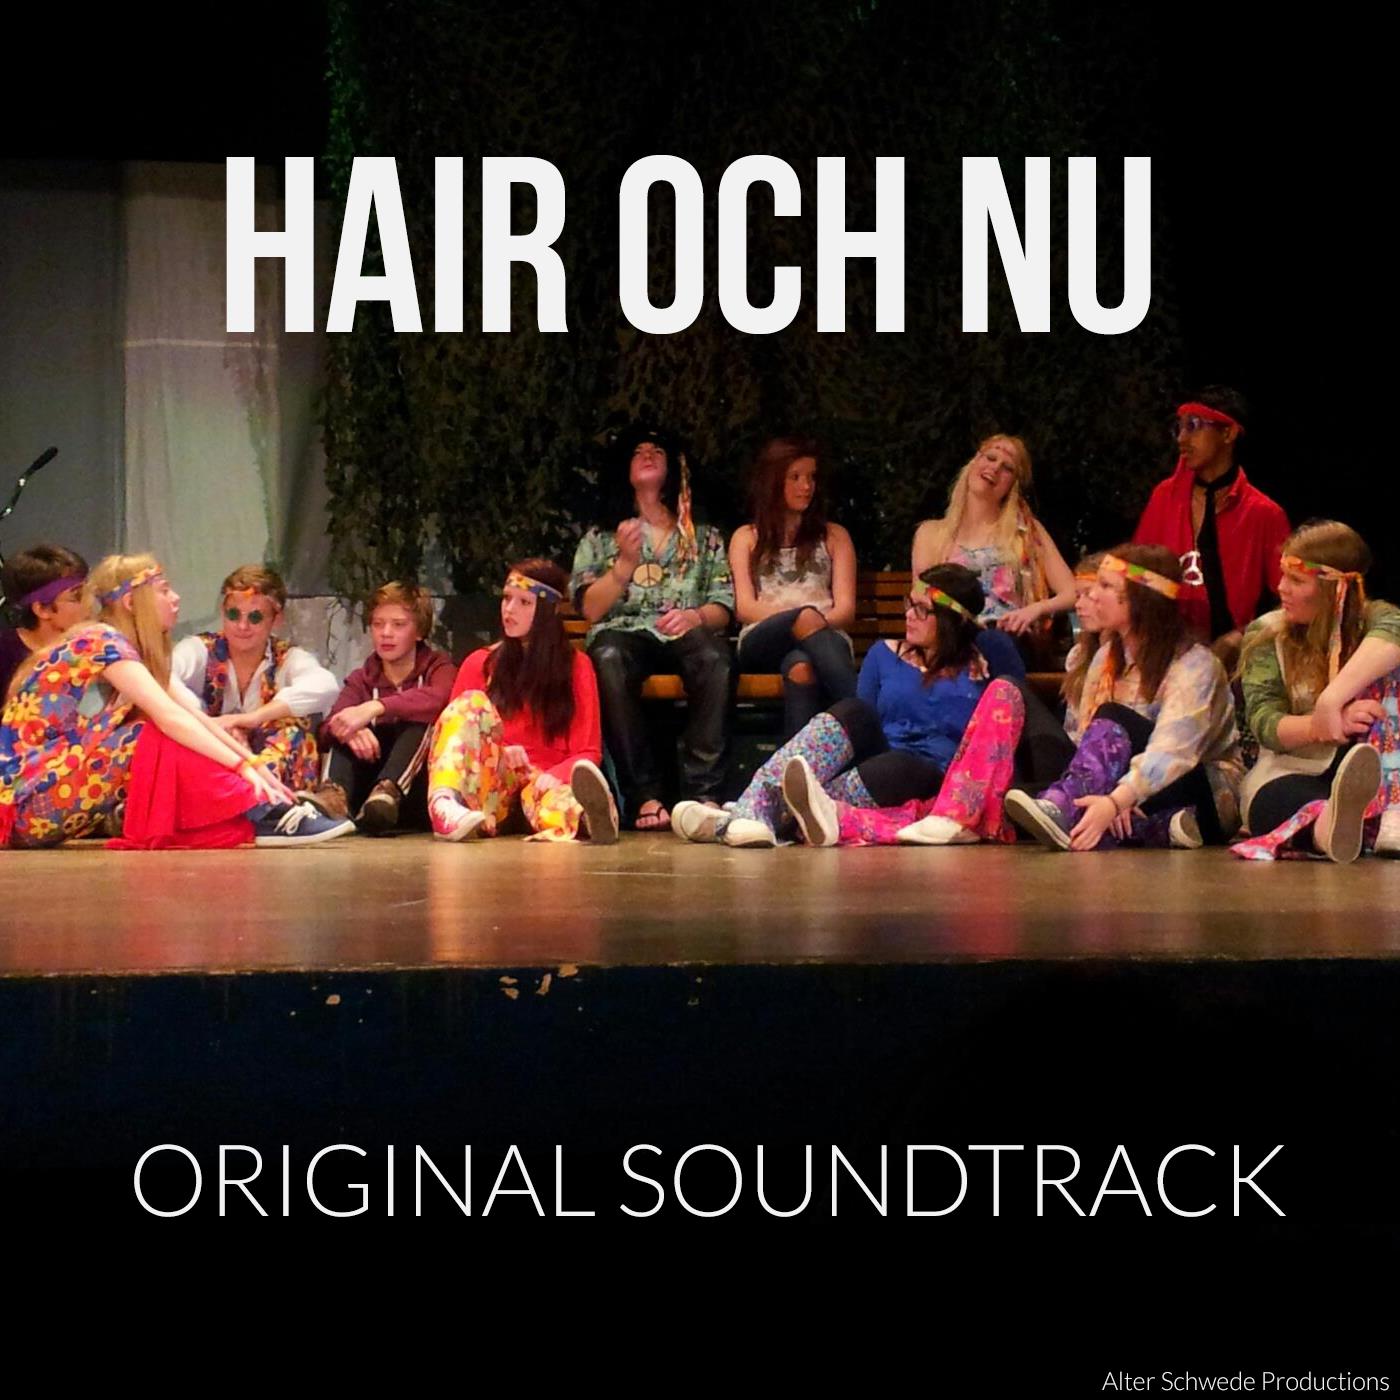 Hair och nu - Original Soundtrack